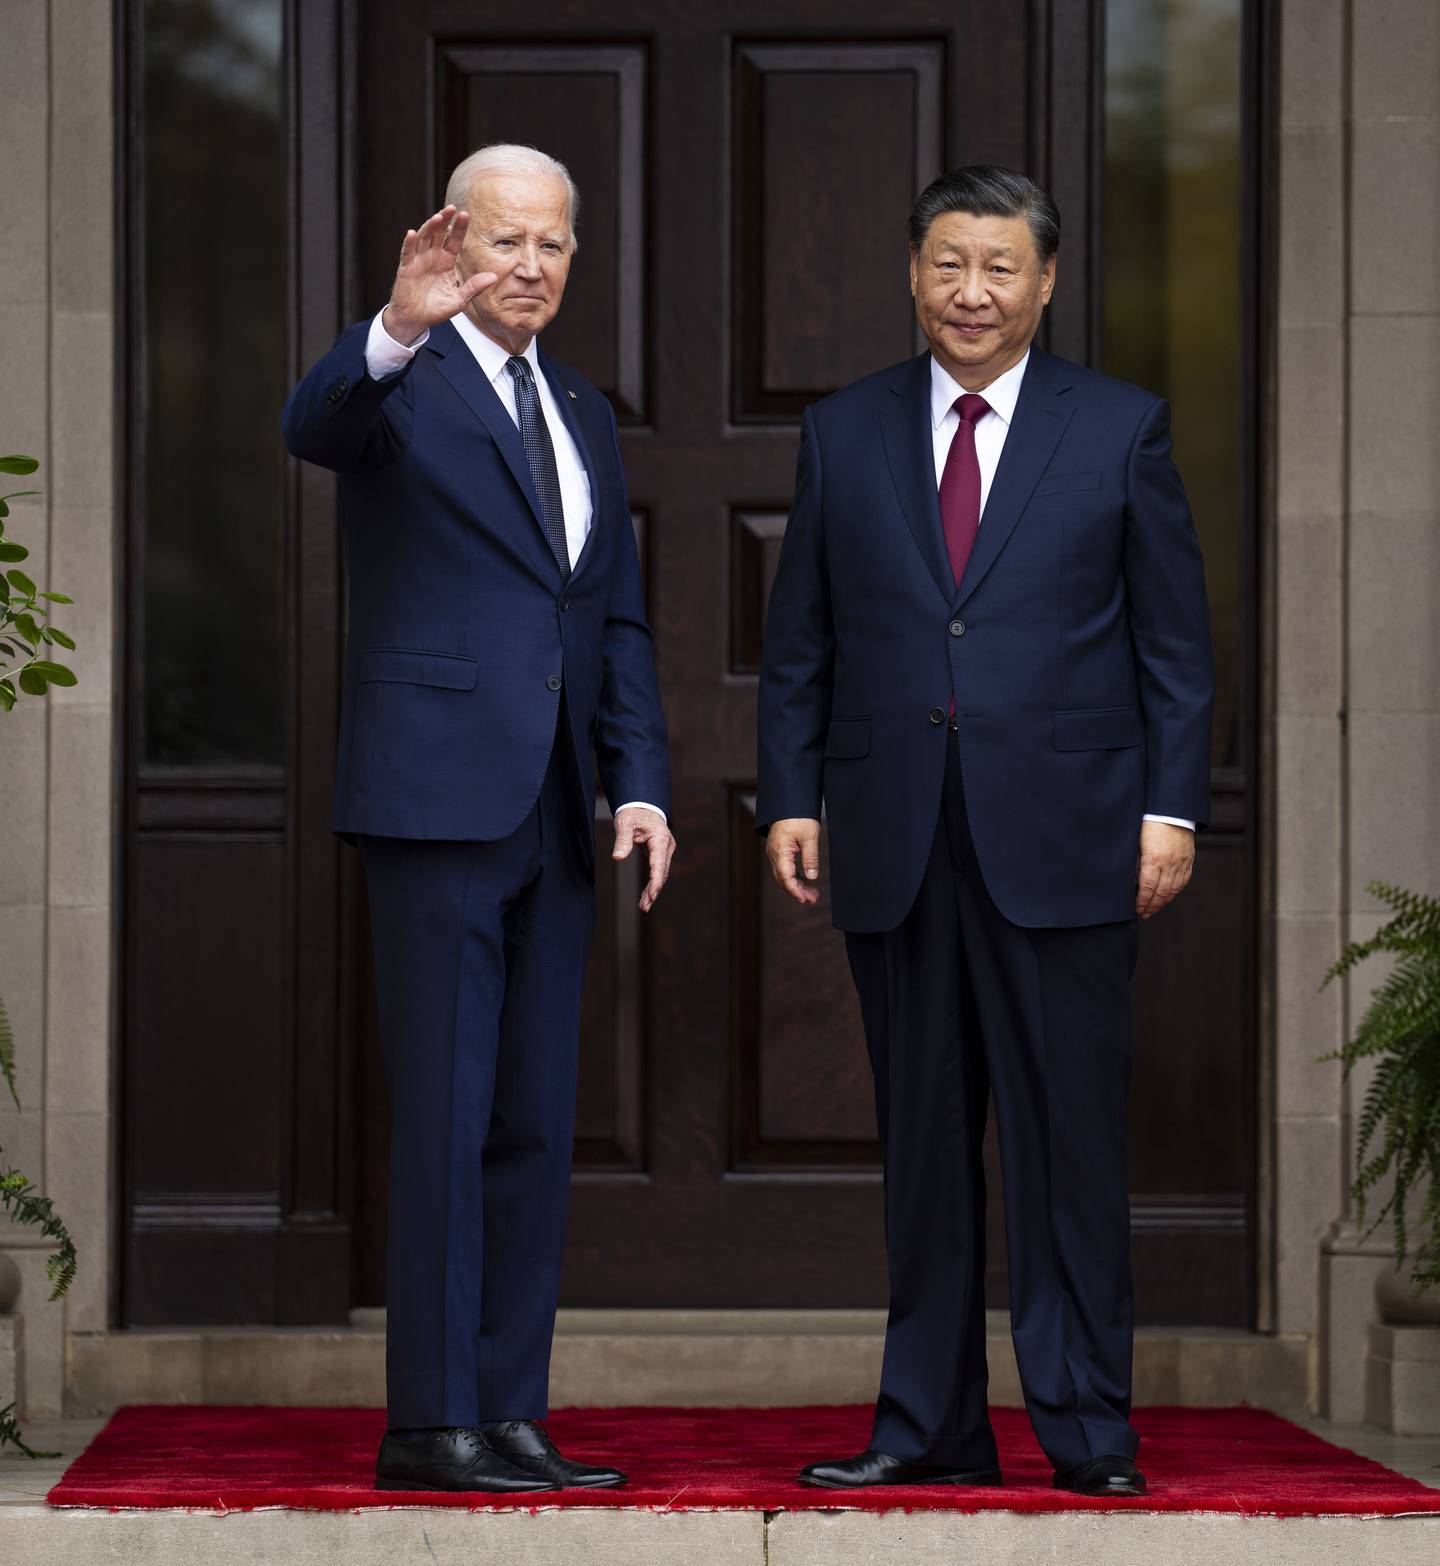 Klimaendringene sto på dagsordenen på toppmøtet mellom presidenteden Joe Biden og Xi Jinping i California onsdag. Dagen før kom USA og Kina med en felles erklæring der de lovet å samarbeide tettere for å begrense klimaendringene. Foto: Doug Mills / The New York Times / Pool / AP / NTB